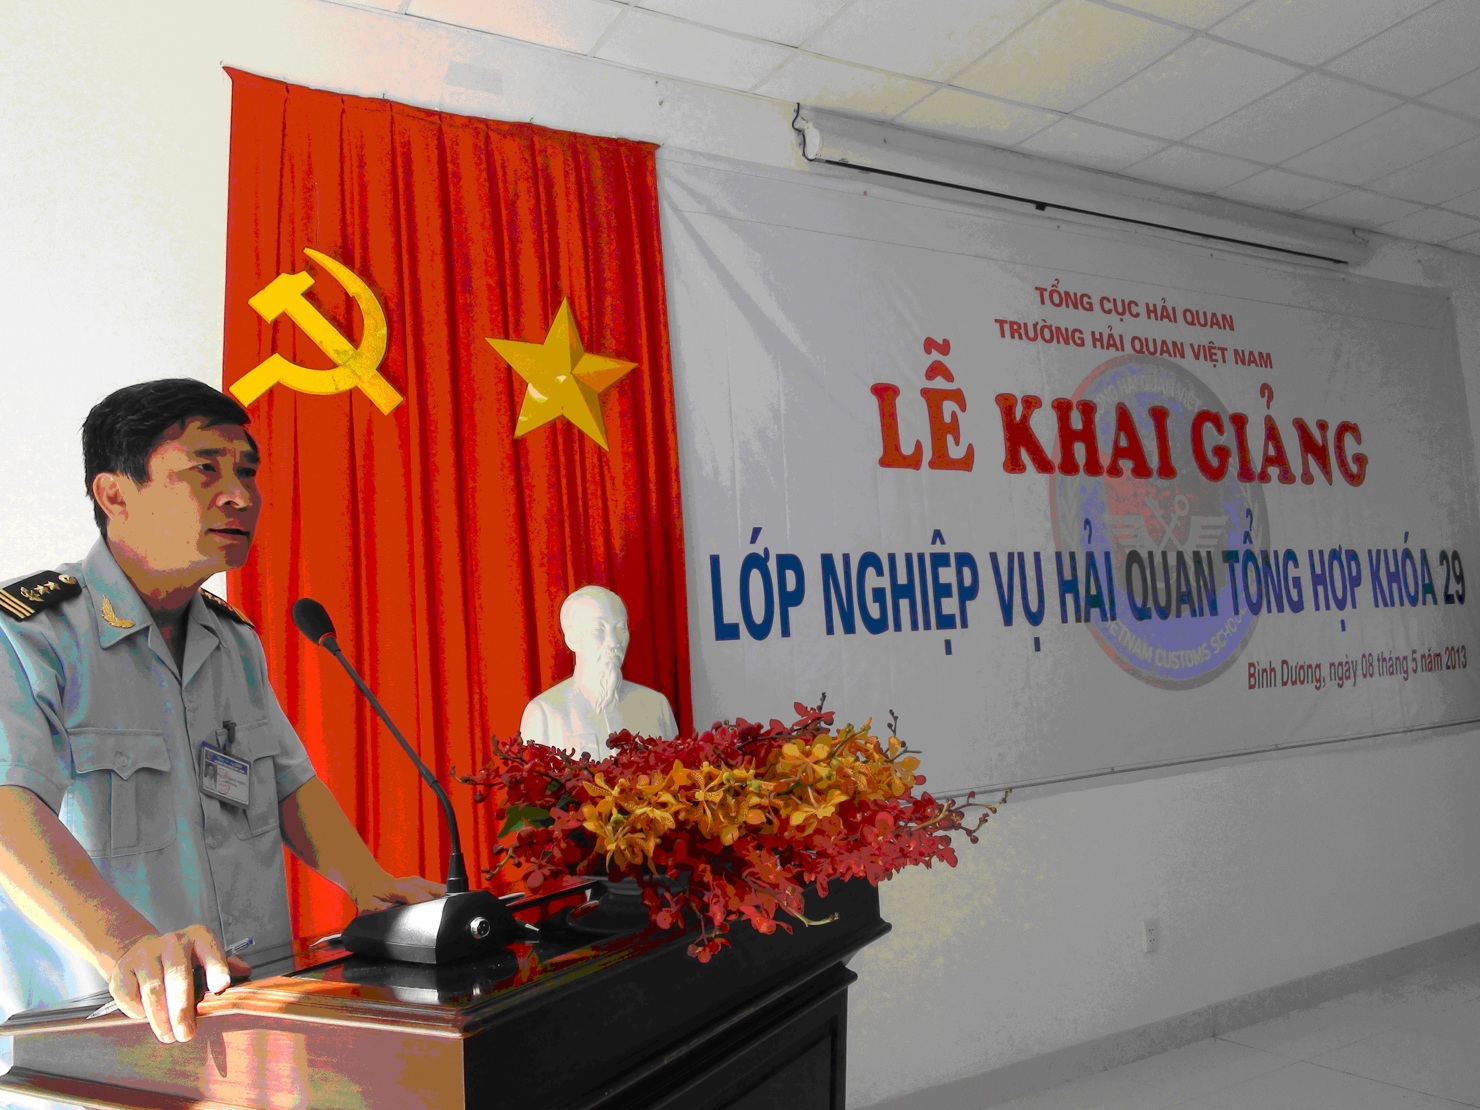 Đồng chí Nguyễn Đình Phiên - Hiệu trưởng Trường Hải quan Việt Nam phát biểu khai mạc khóa học